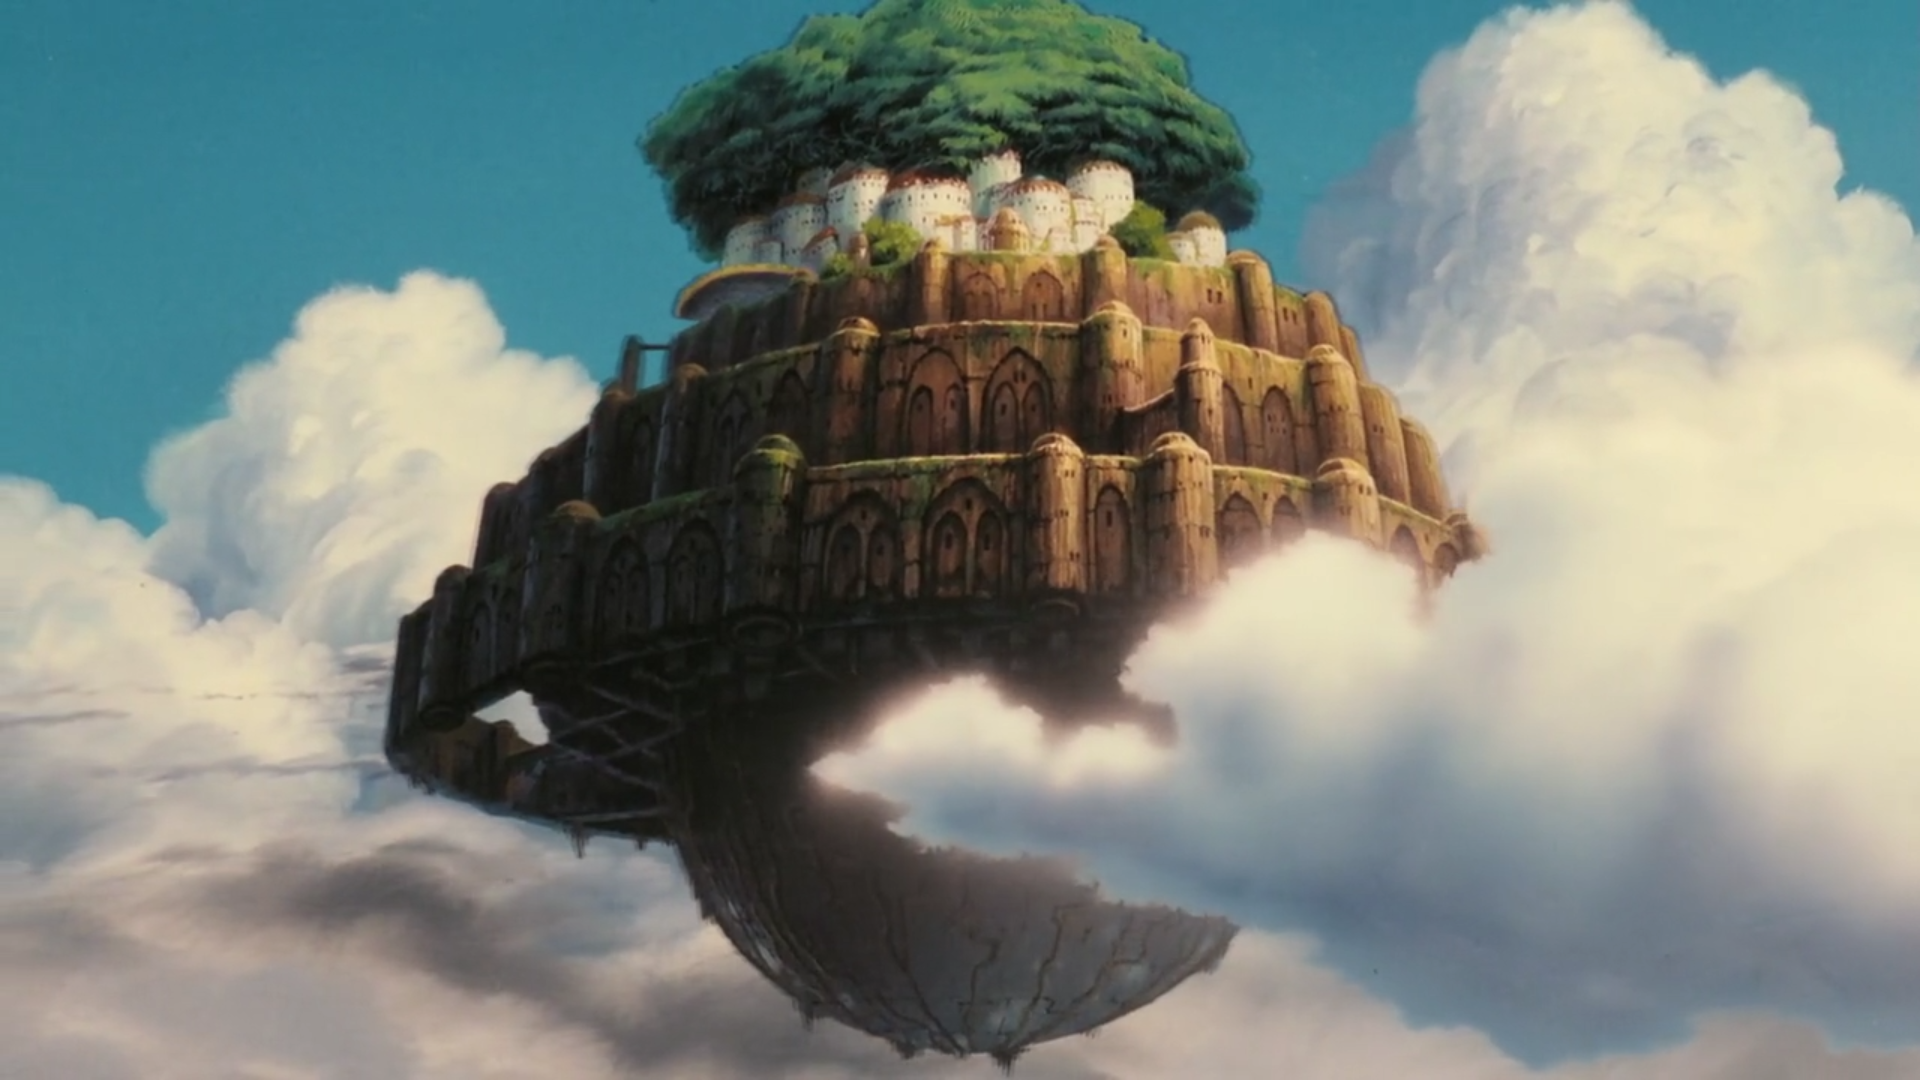 宫崎骏的动画王国：天空之城——与你相伴，唯爱永恒！ - 知乎